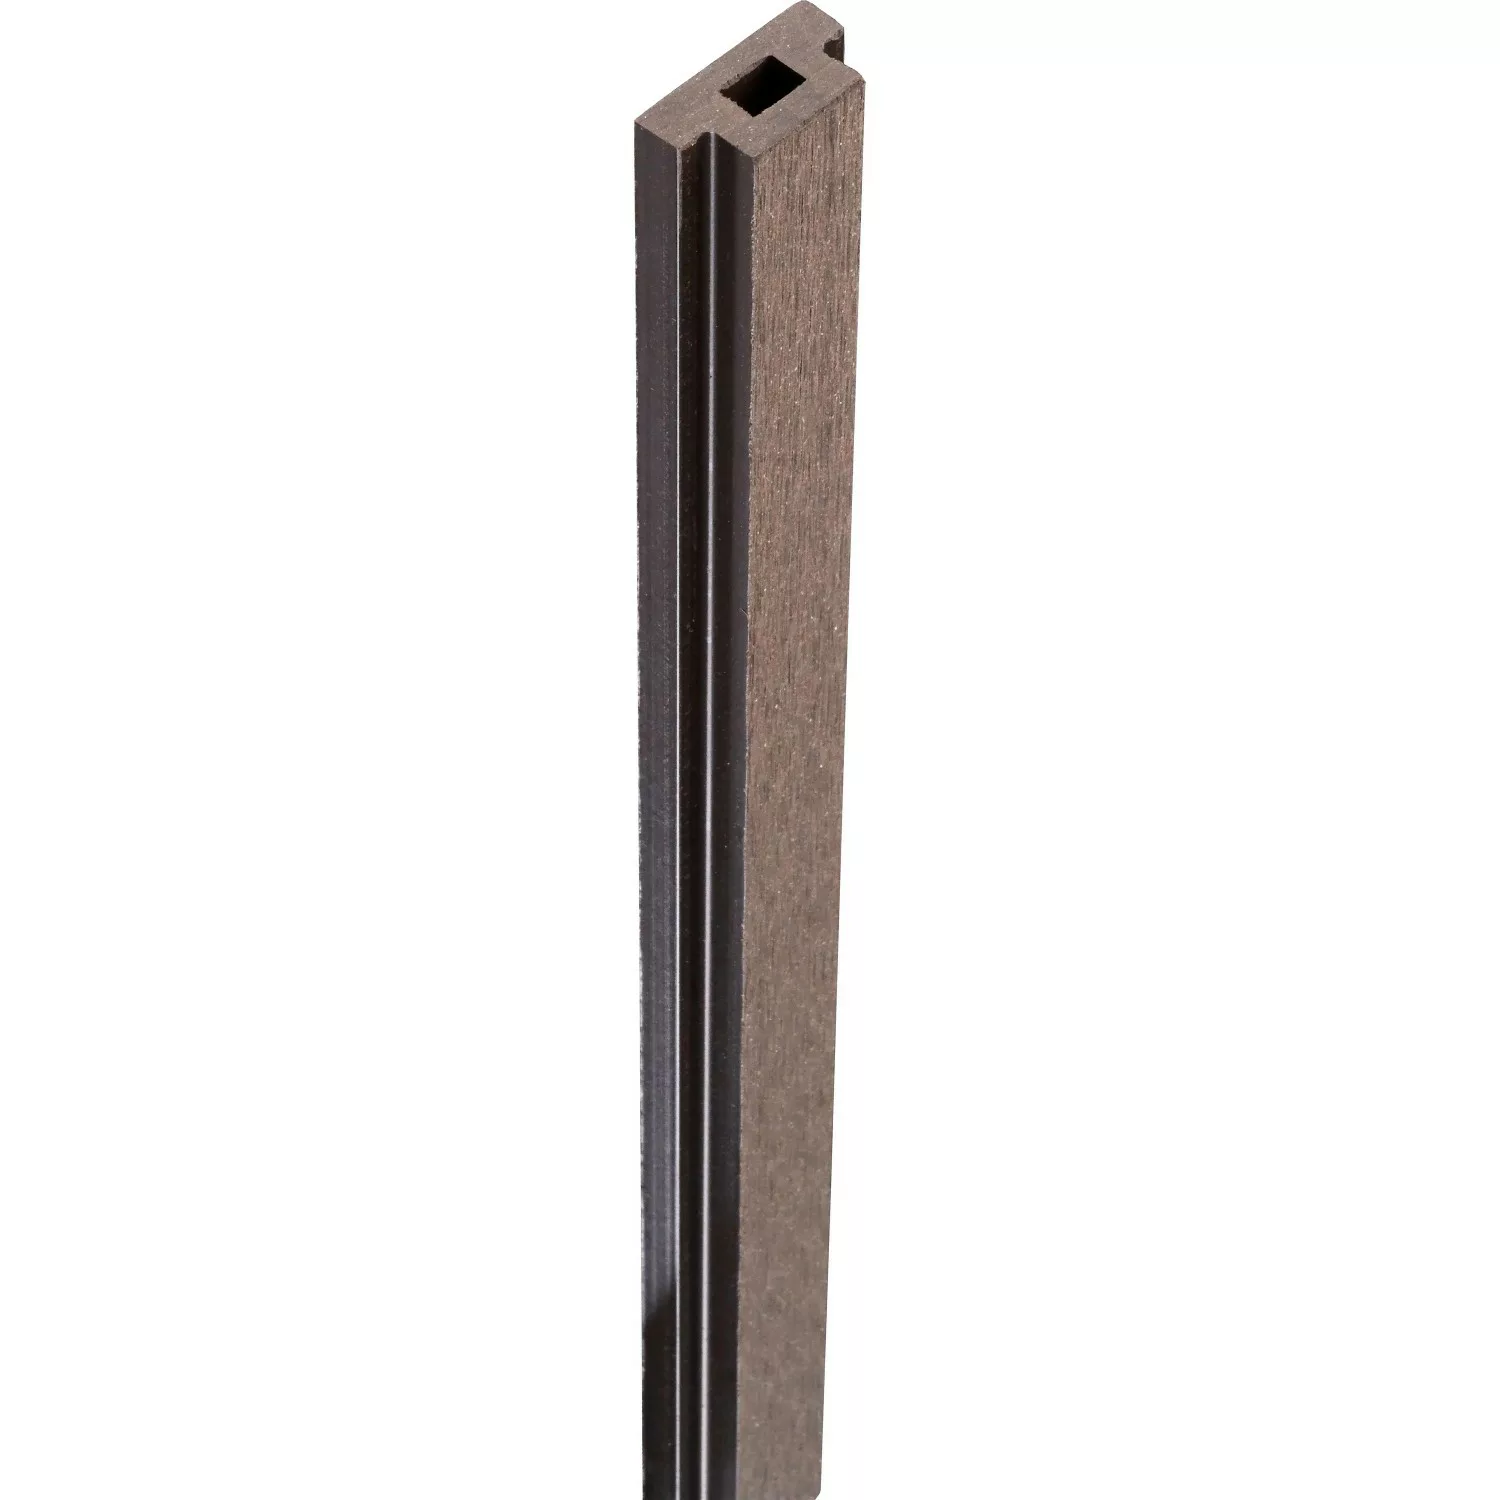 GroJa Nutleiste Solid-Steckzaun WPC 190 cm x 2,9 cm x 1,5 cm Terra günstig online kaufen